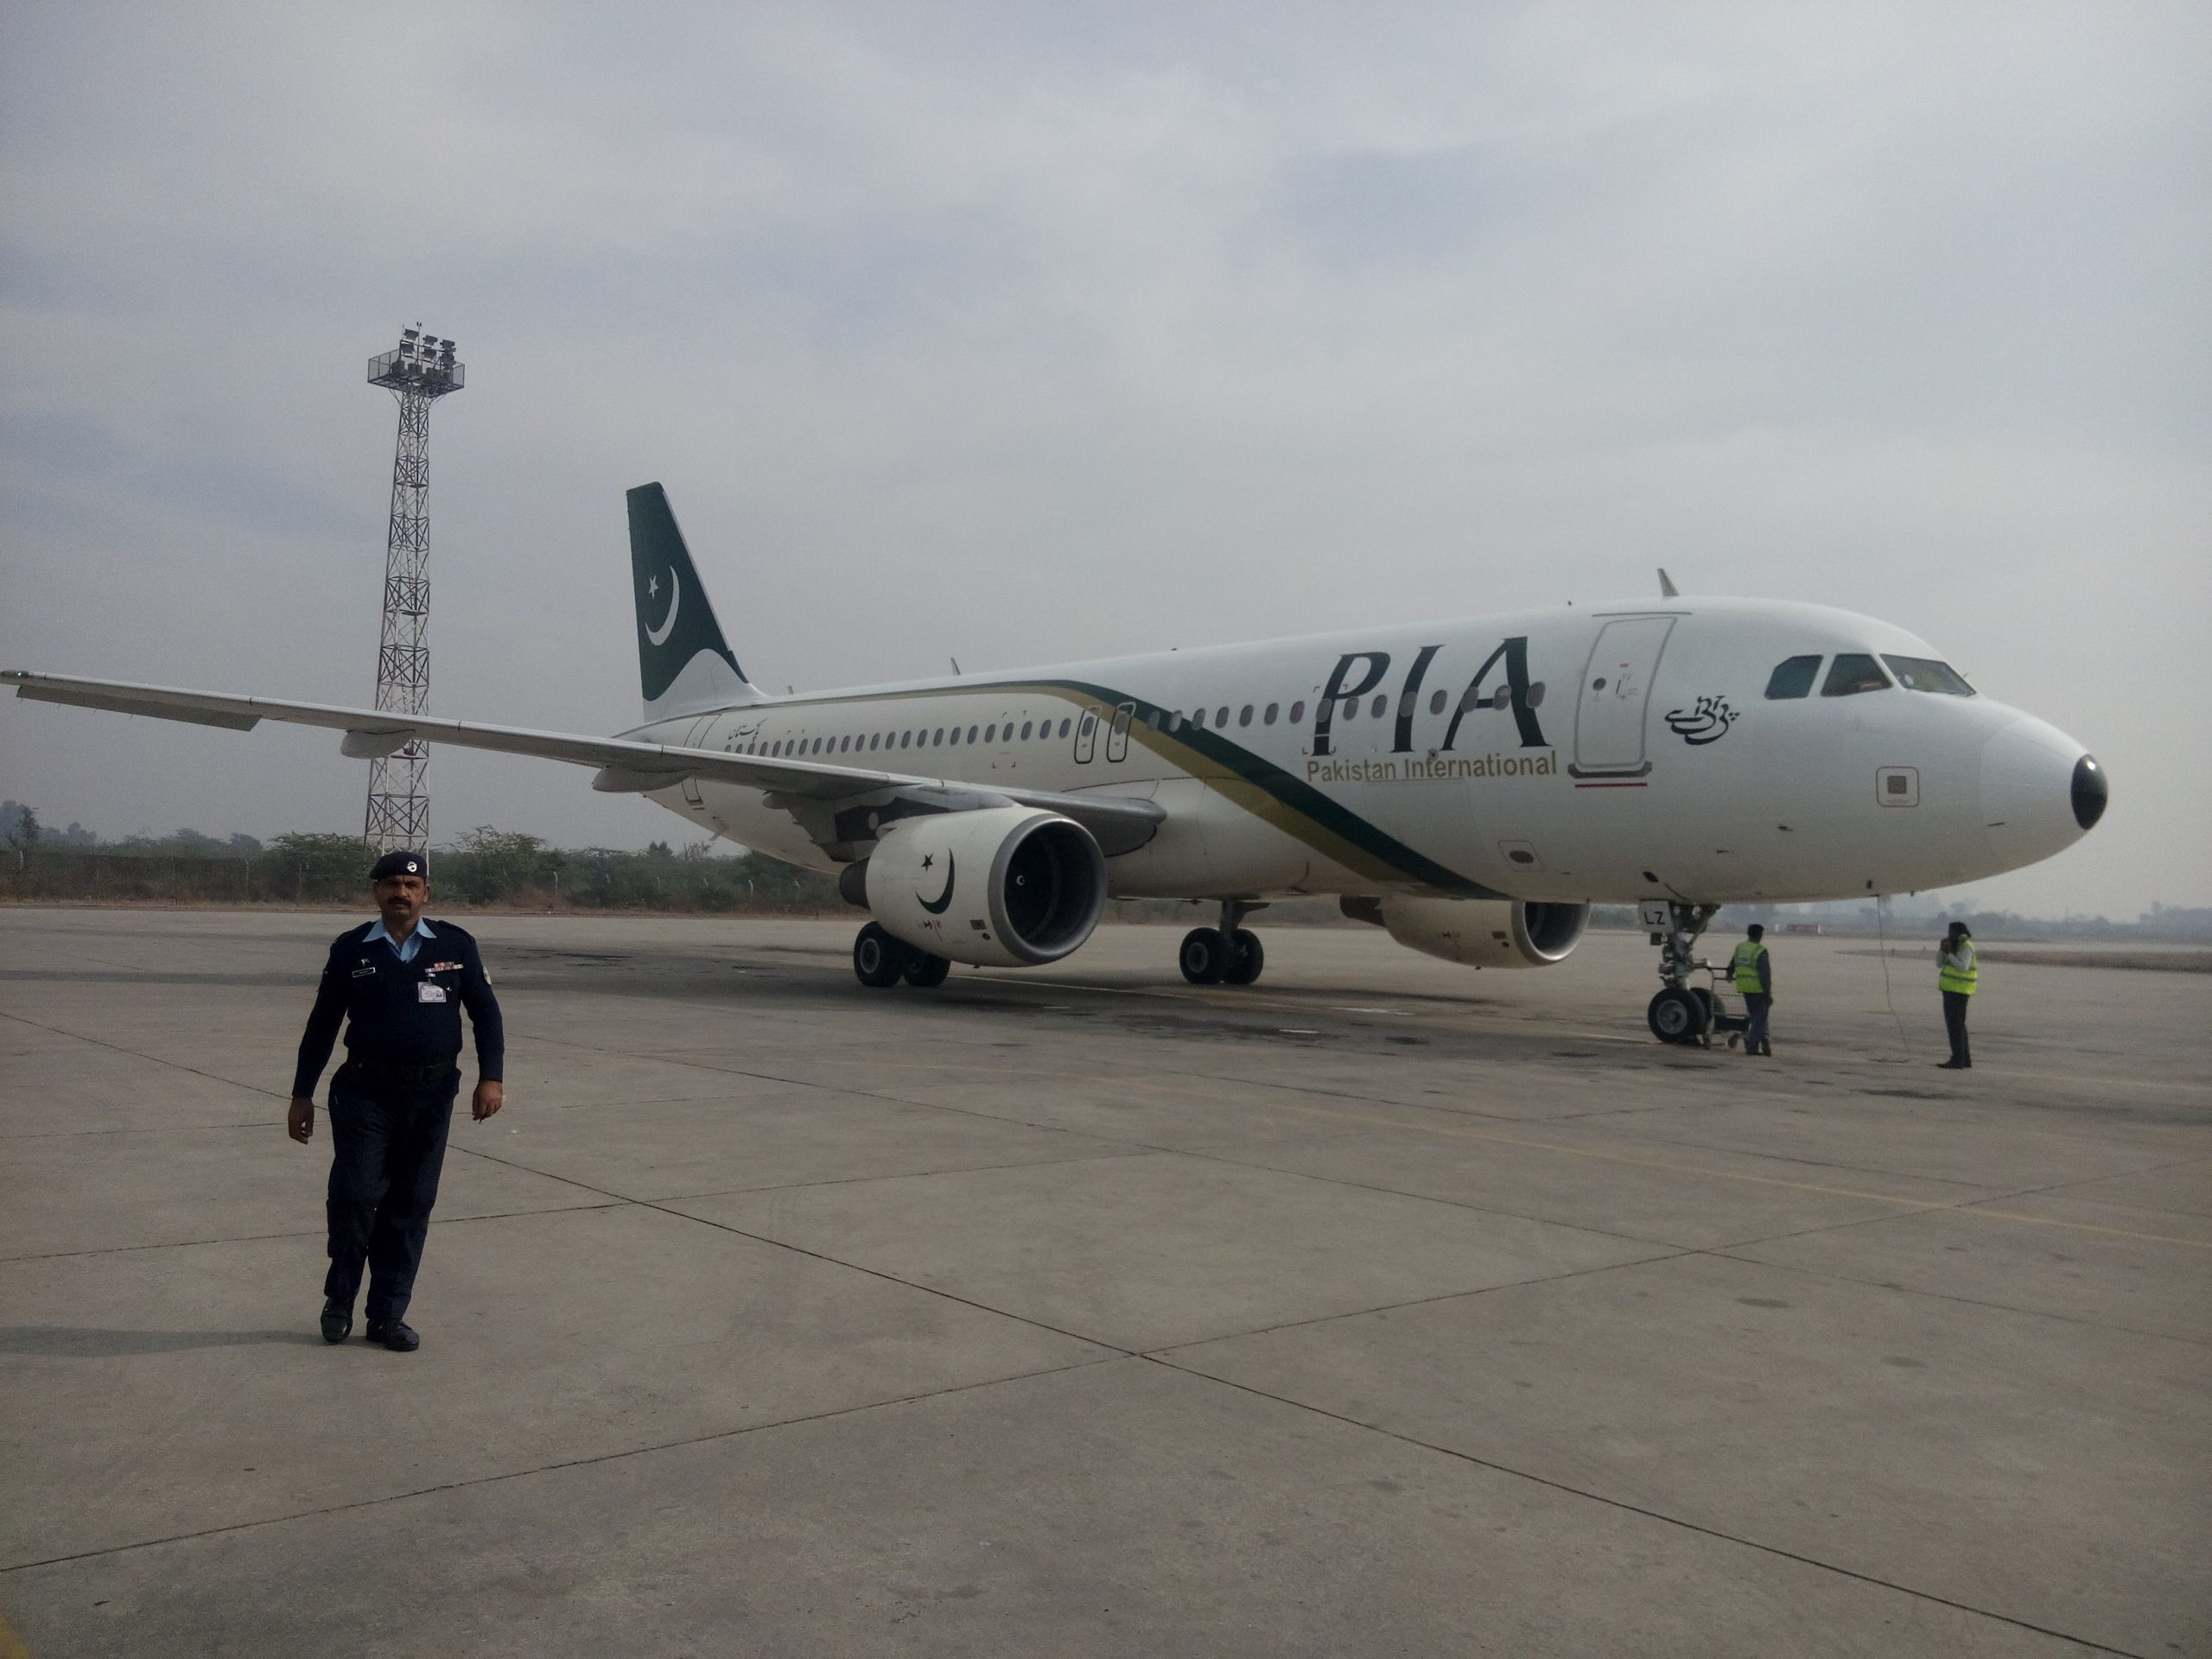 Le crash de Pakistan International Airlines en vidéos 44 Air Journal